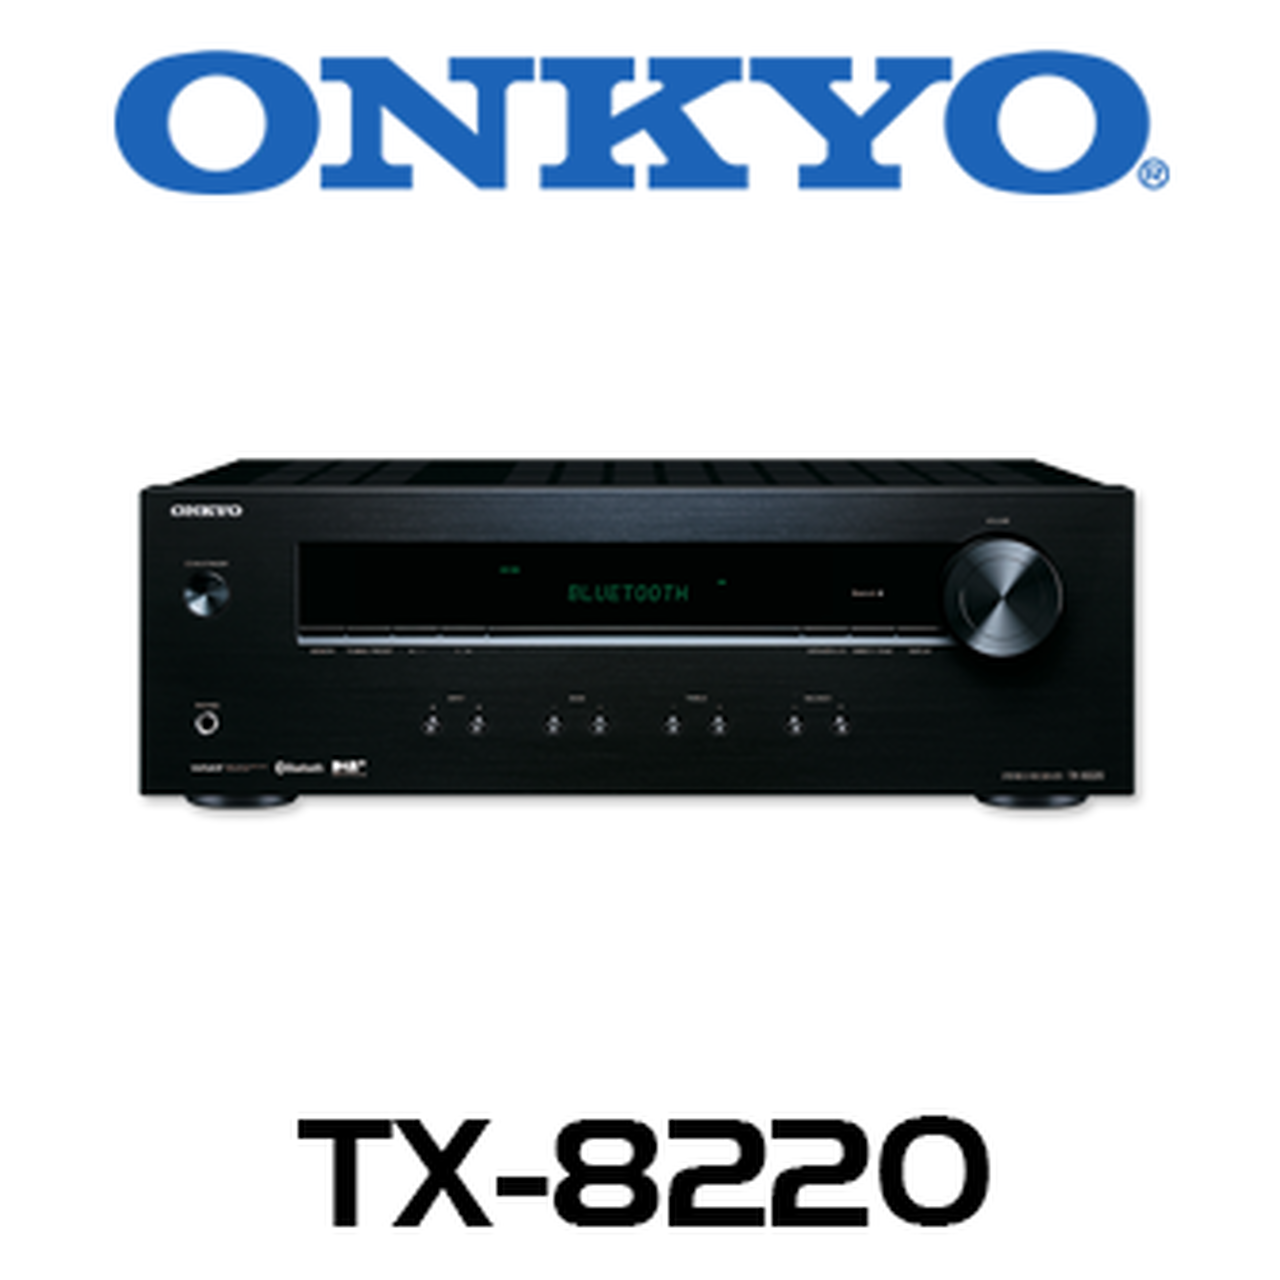 onkyo tx 8220 review